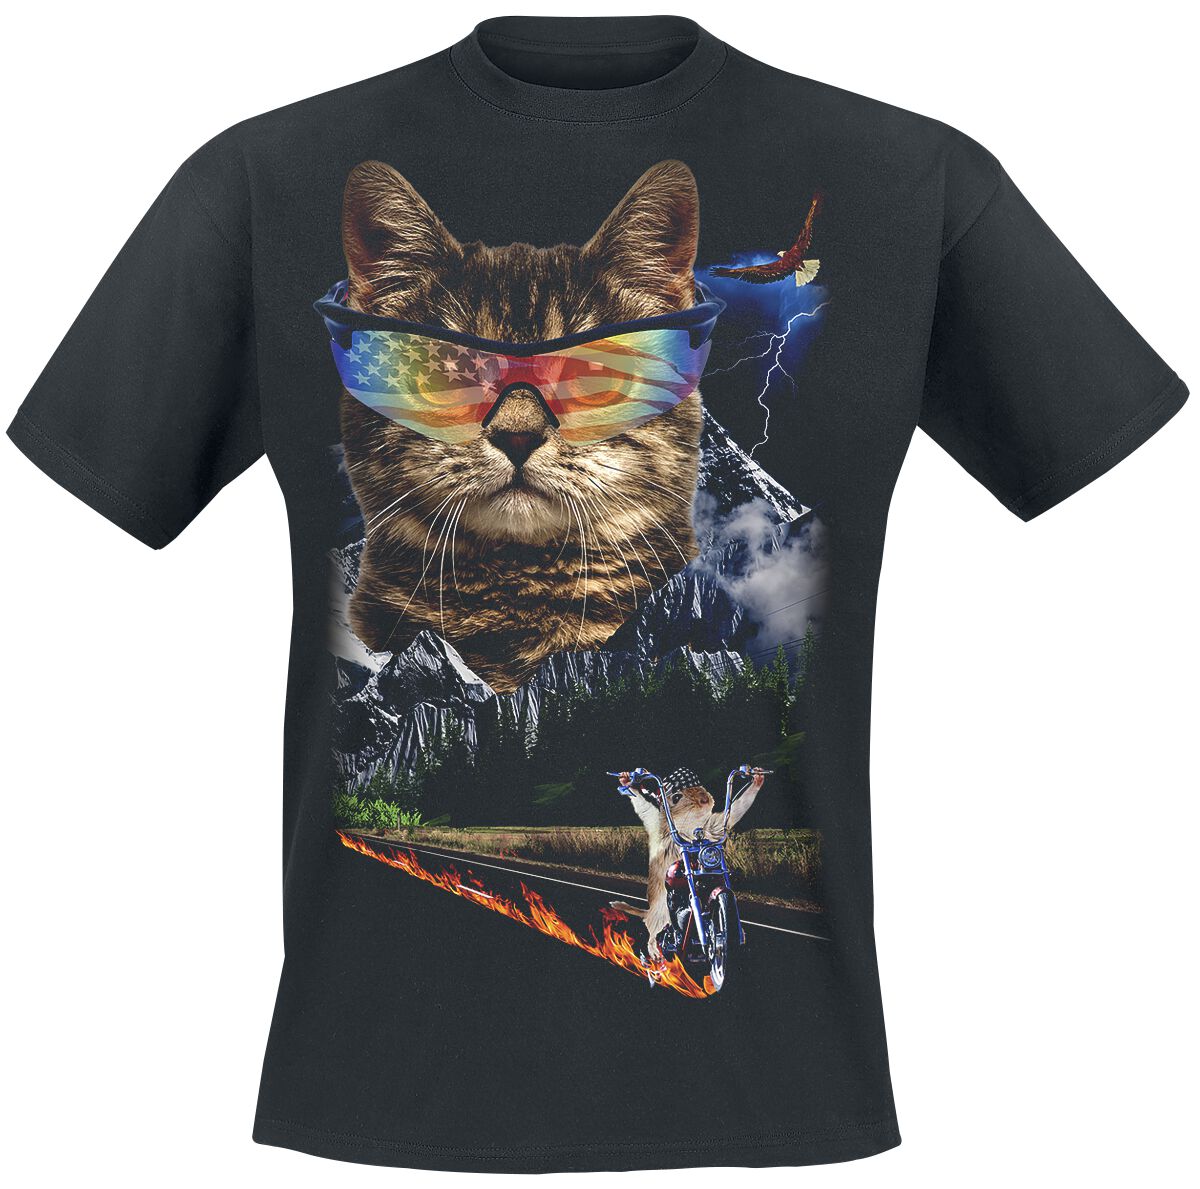 Goodie Two Sleeves T-Shirt - Meow For Freedom - S bis 4XL - für Männer - Größe 4XL - schwarz